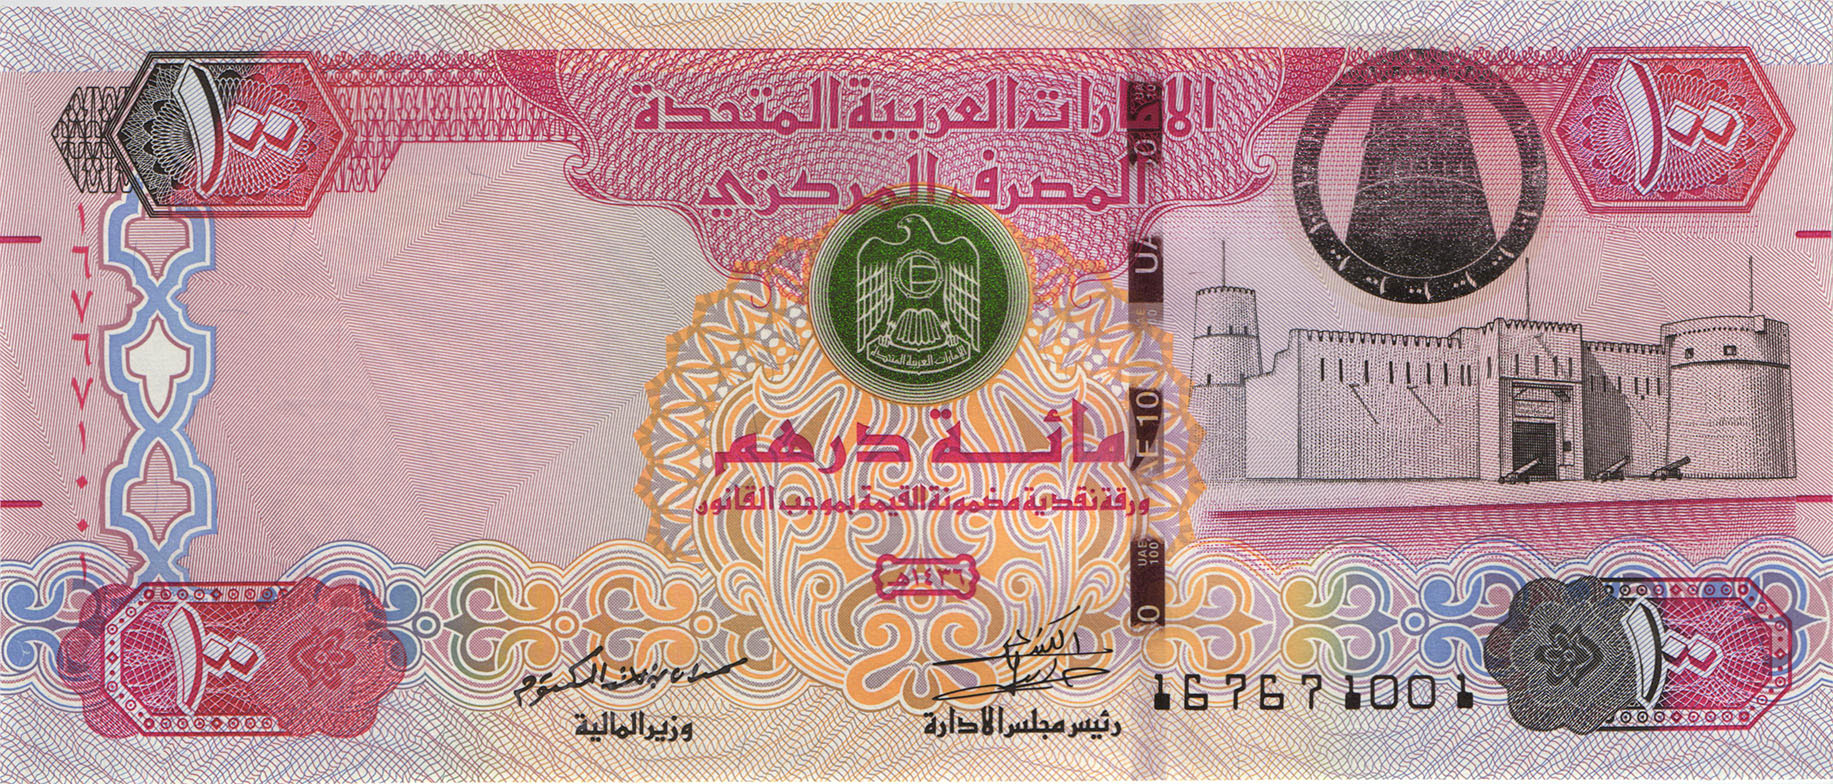 День дирхам. Банкноты United arab Emirates,2008, 50 dirhams. 100 Дирхам ОАЭ. Дирхам ОАЭ бонны. Монета Объединённых арабских Эмиратов 100.